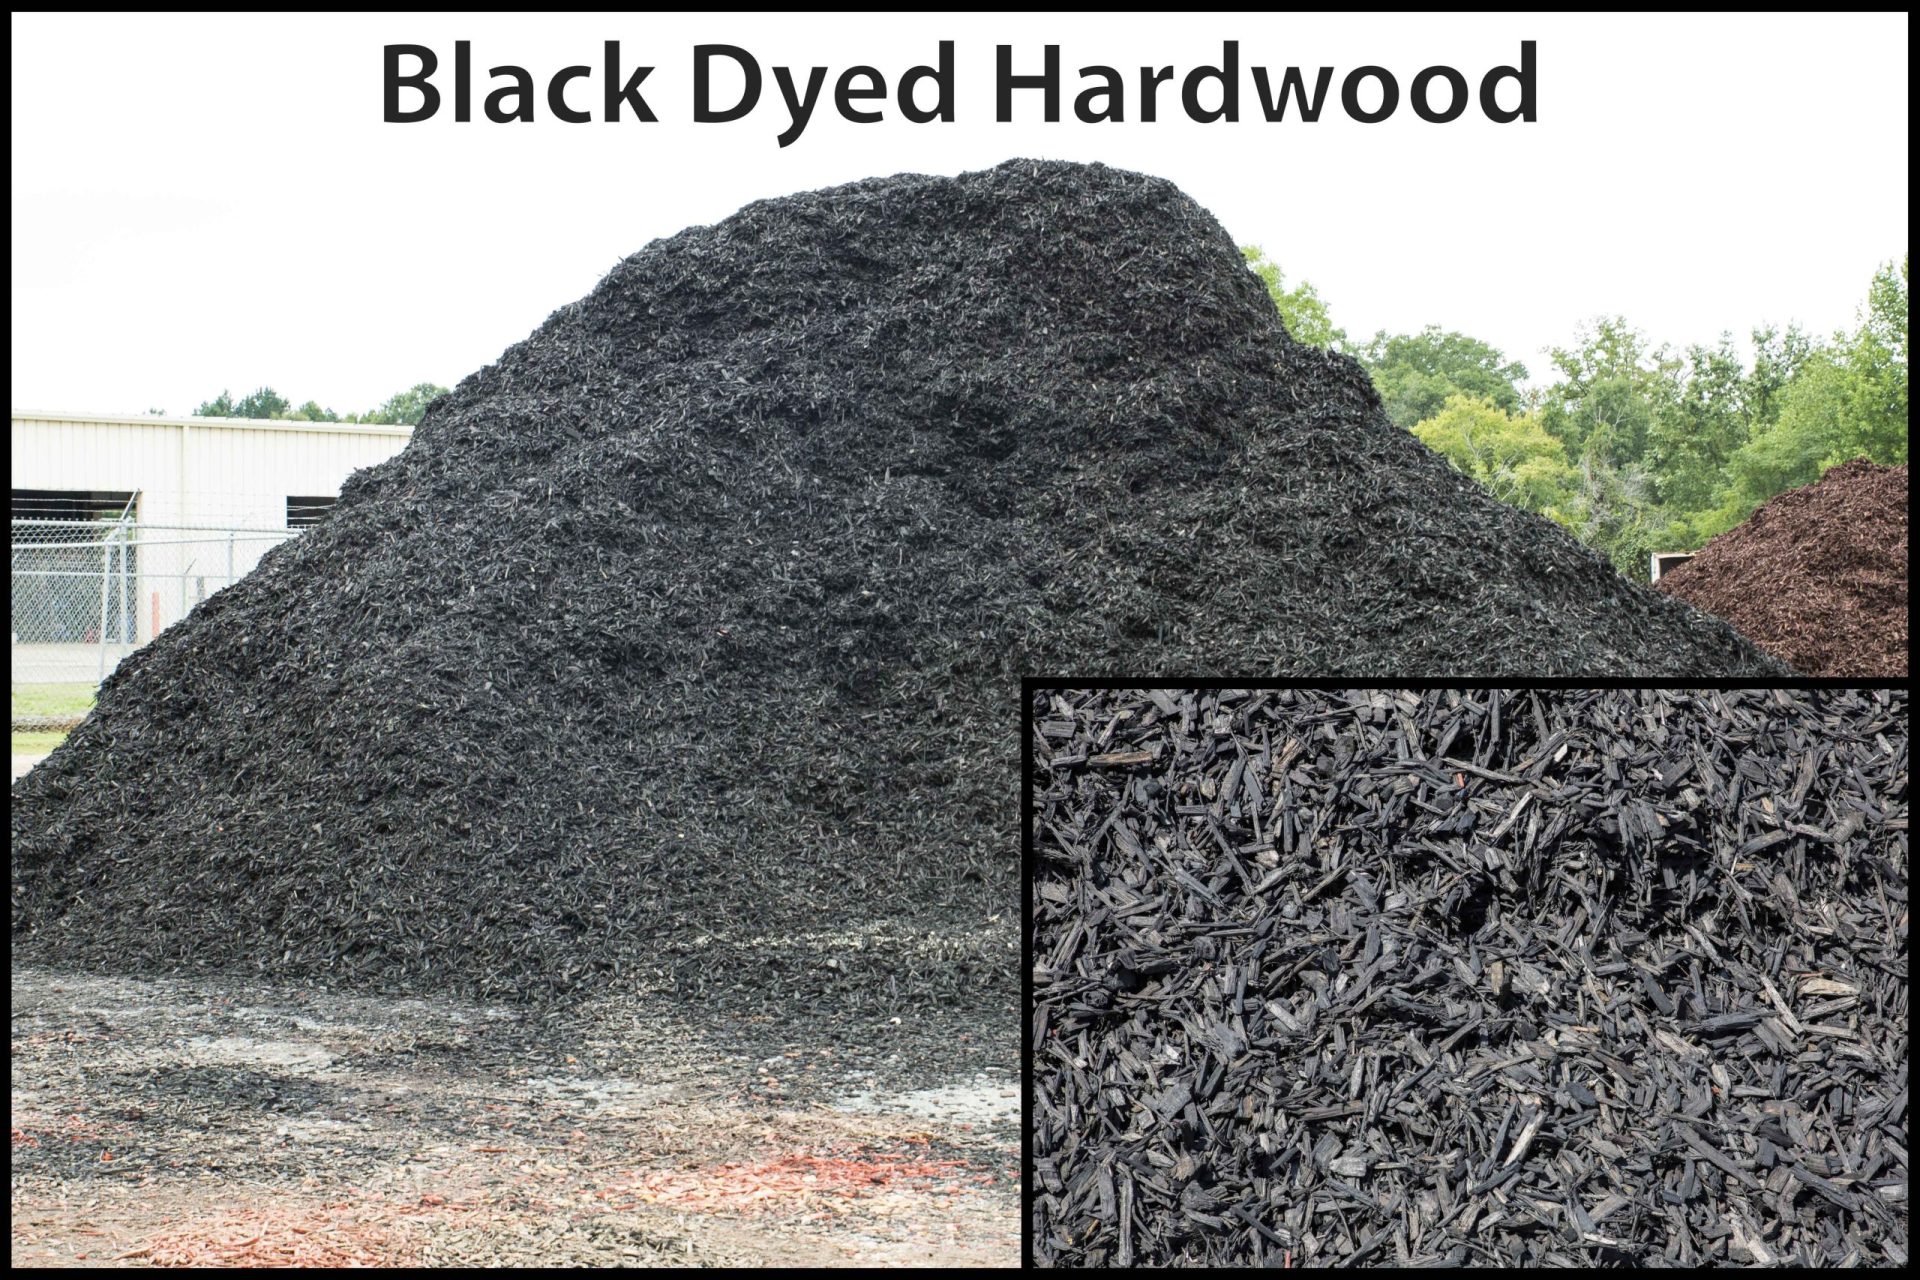 Black dyed hardwood